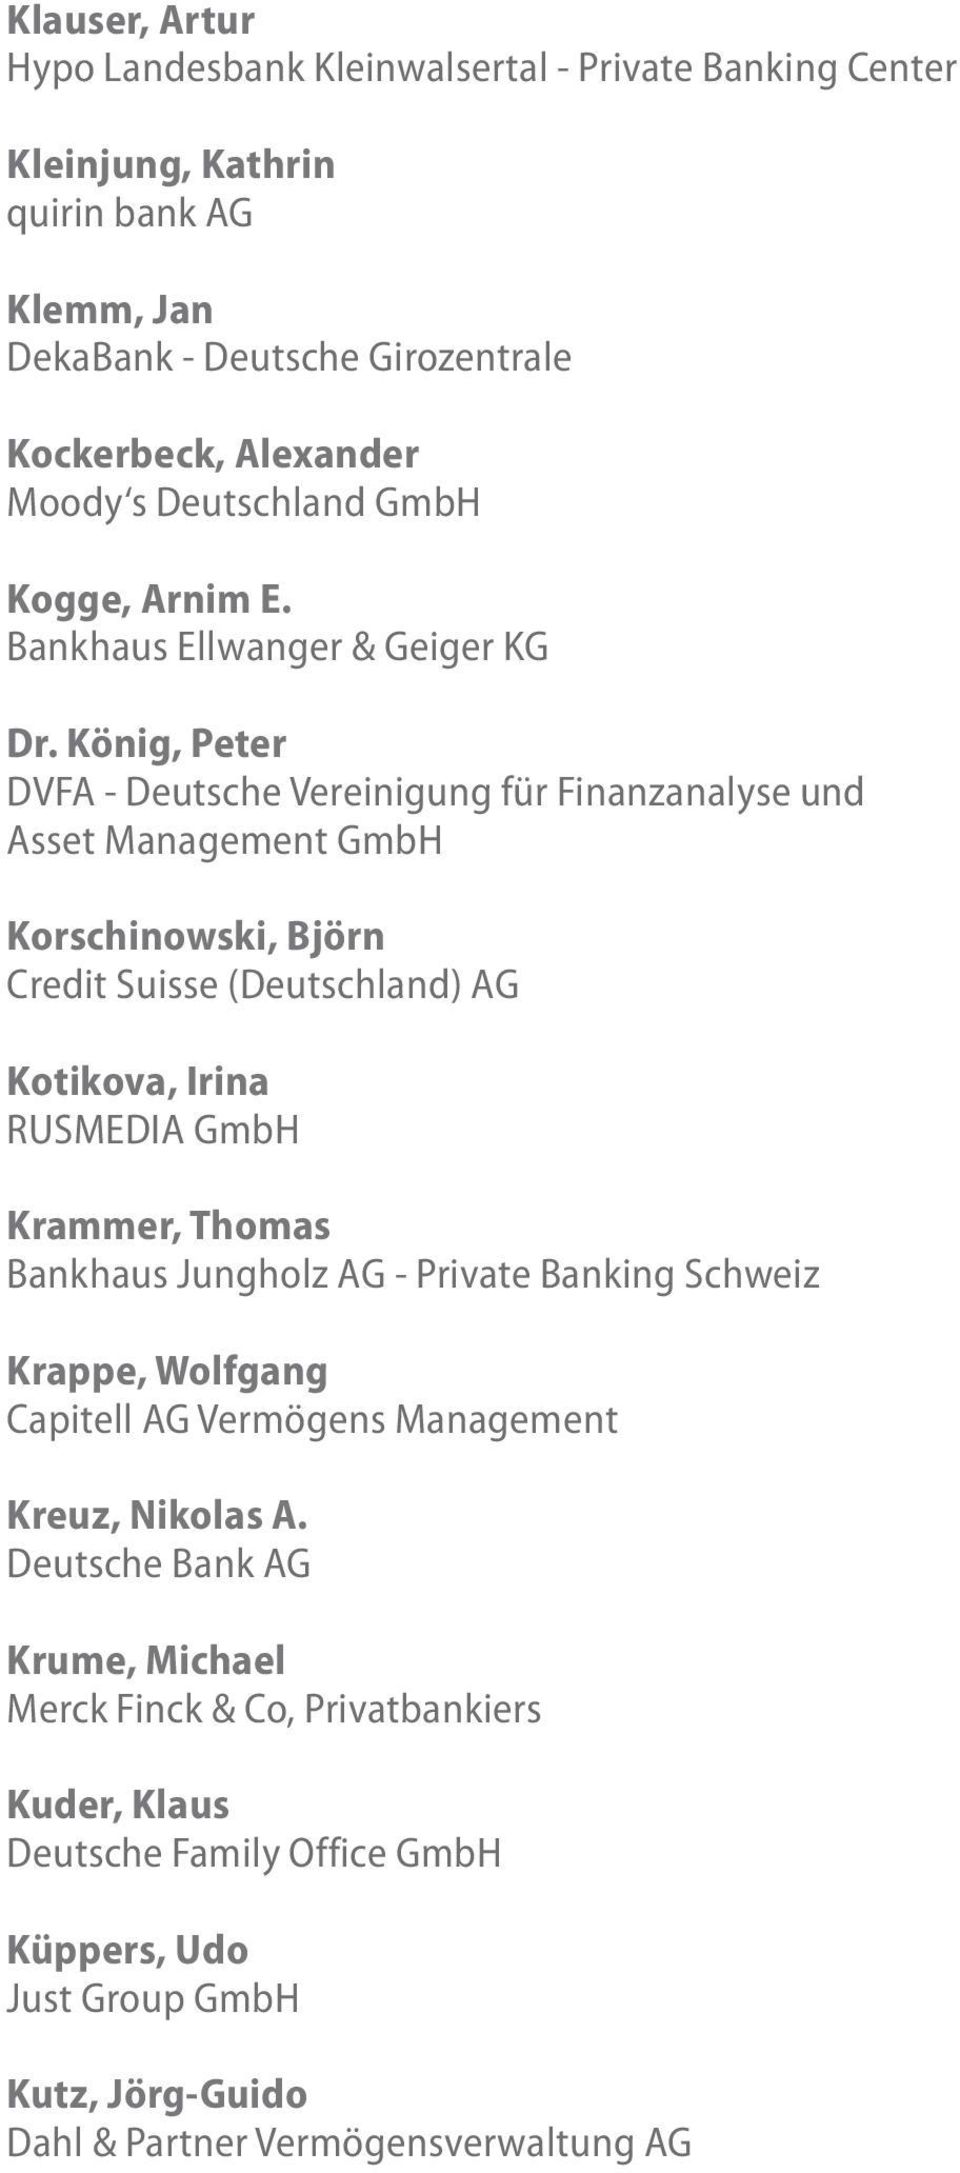 König, Peter DVFA - Deutsche Vereinigung für Finanzanalyse und Asset Management GmbH Korschinowski, Björn Credit Suisse (Deutschland) AG Kotikova, Irina RUSMEDIA GmbH Krammer, Thomas